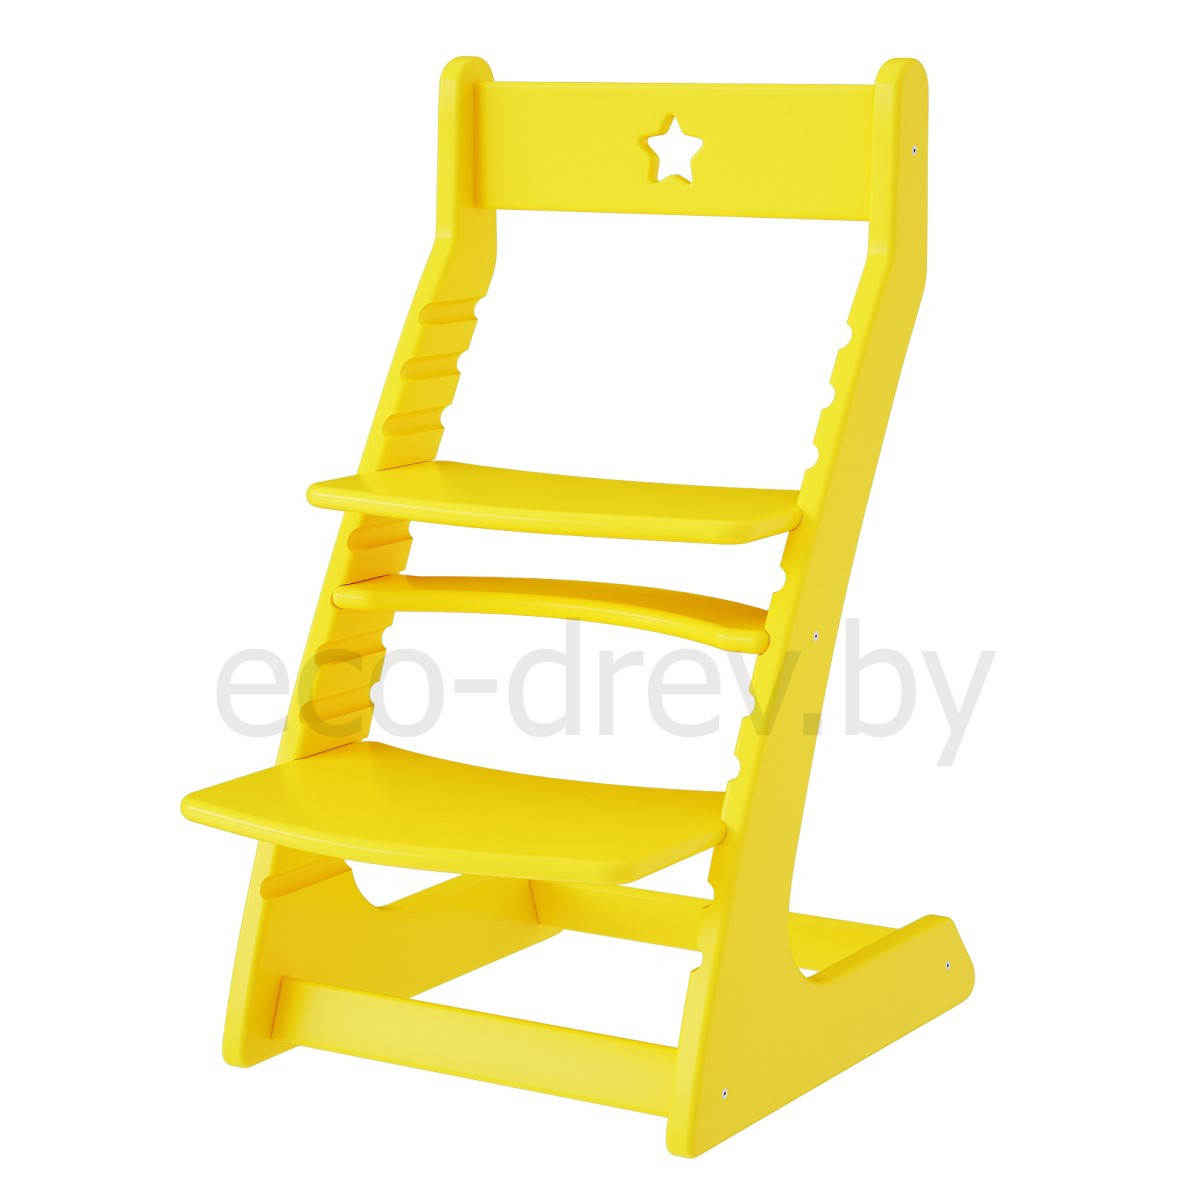 Регулируемый десткий стул "Ростик/Rostik" (Желтый)